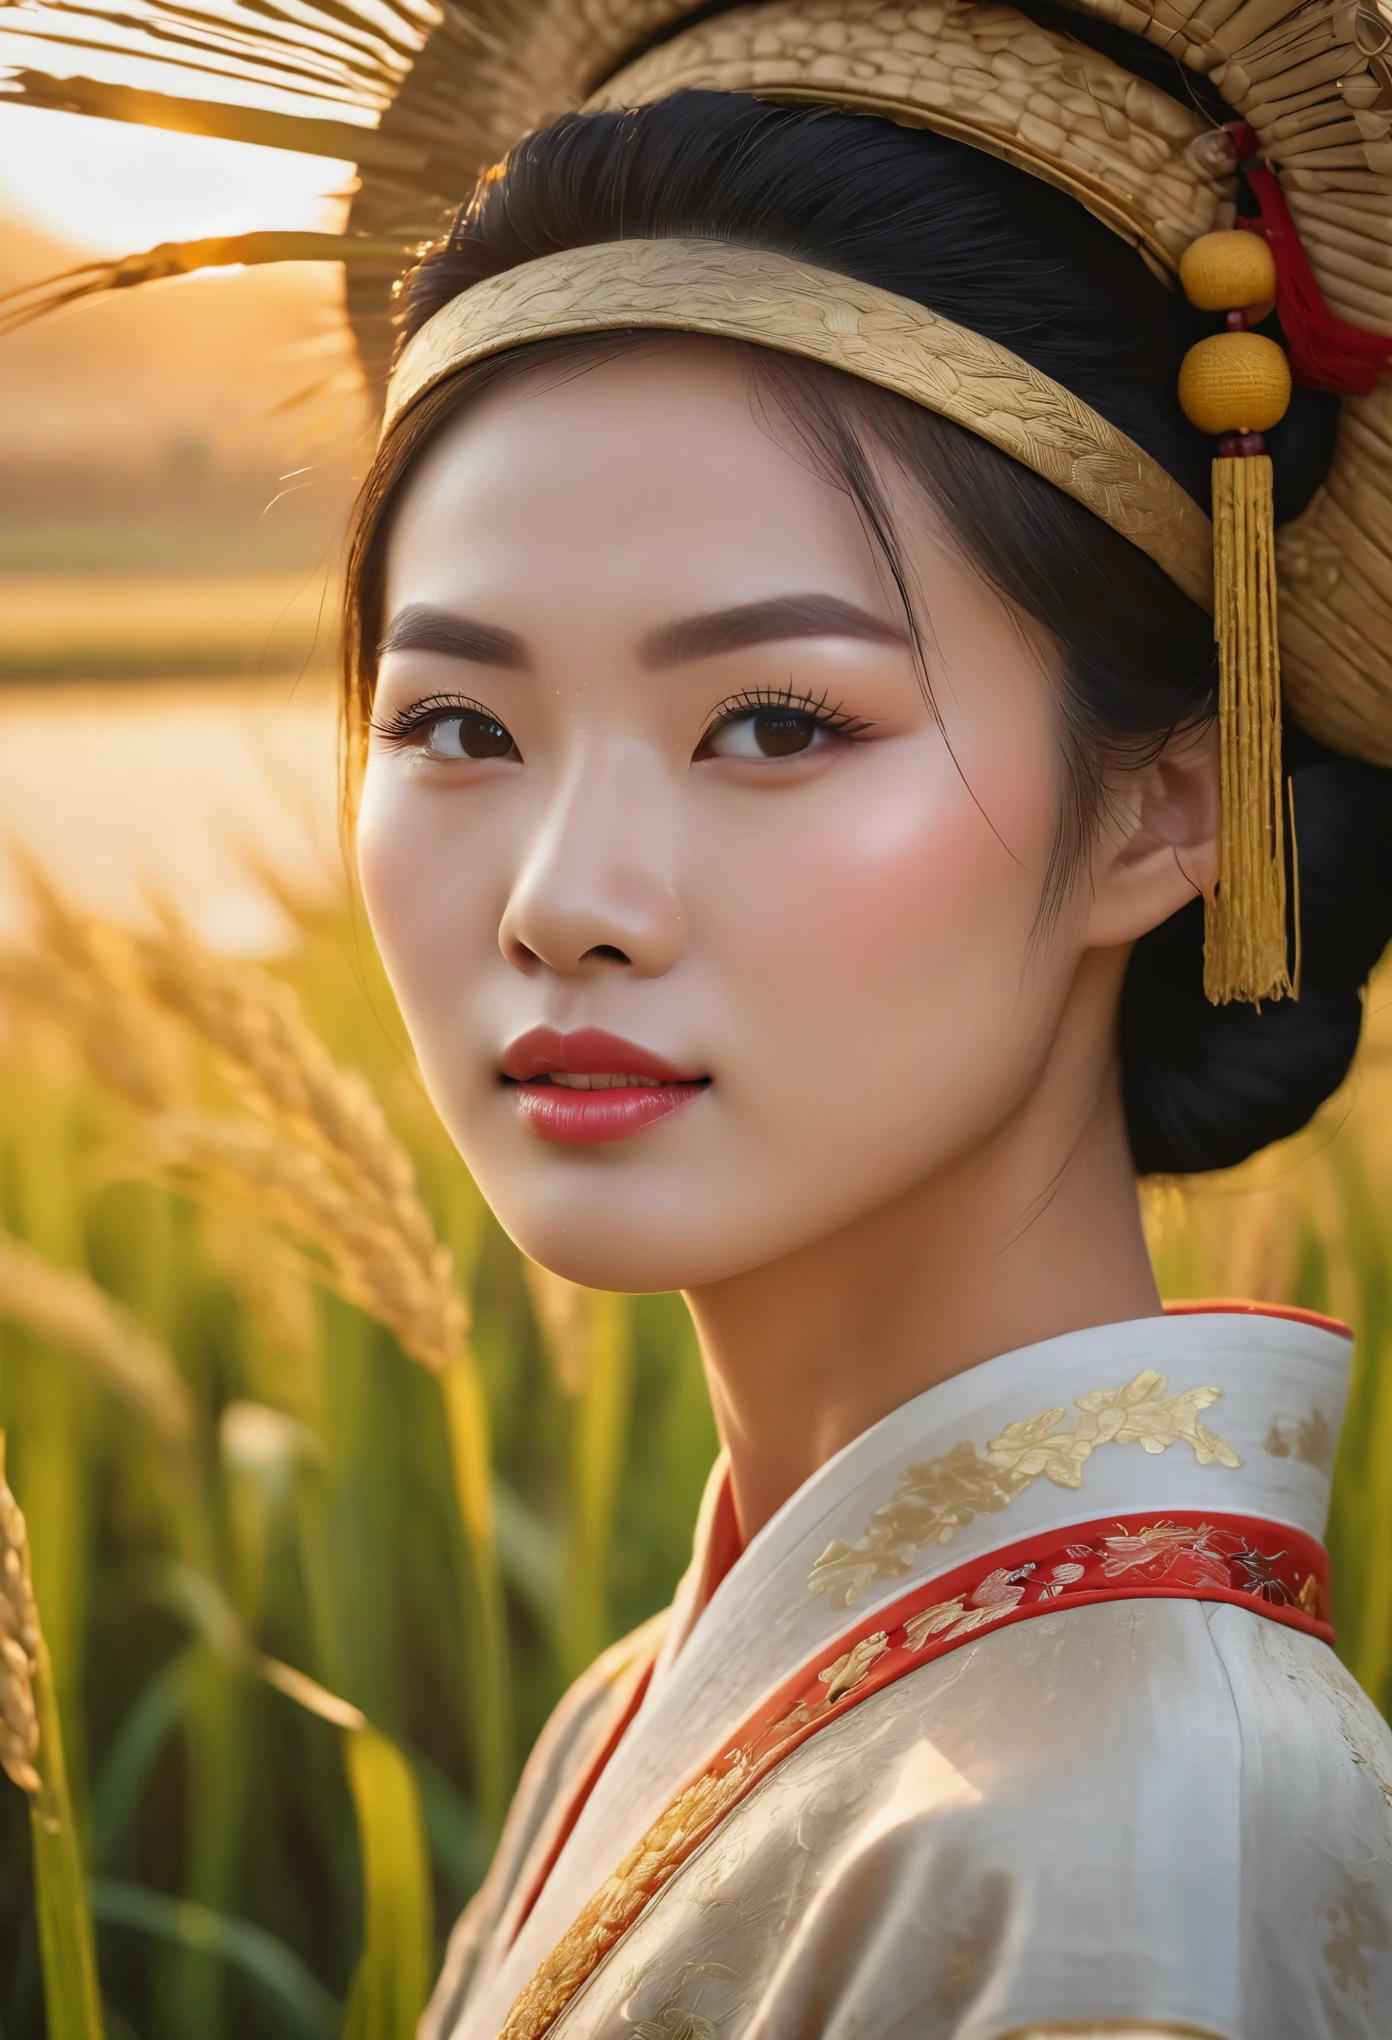 中国の田んぼに昇る美しい日の出, 米を収穫する中国の農民, 美しい細部までこだわった目, 美しい唇のディテール, 非常に詳細な目と顔, 長いまつ毛, 中国の伝統衣装, 穏やかな田園風景, ゴールデンアワー照明, 暖色系の色調, ソフトフォーカス, 写実的な, 8k, 高解像度, 傑作, 超詳細, プロの写真撮影, 鮮やかな色彩, 自然光, 映画の構成